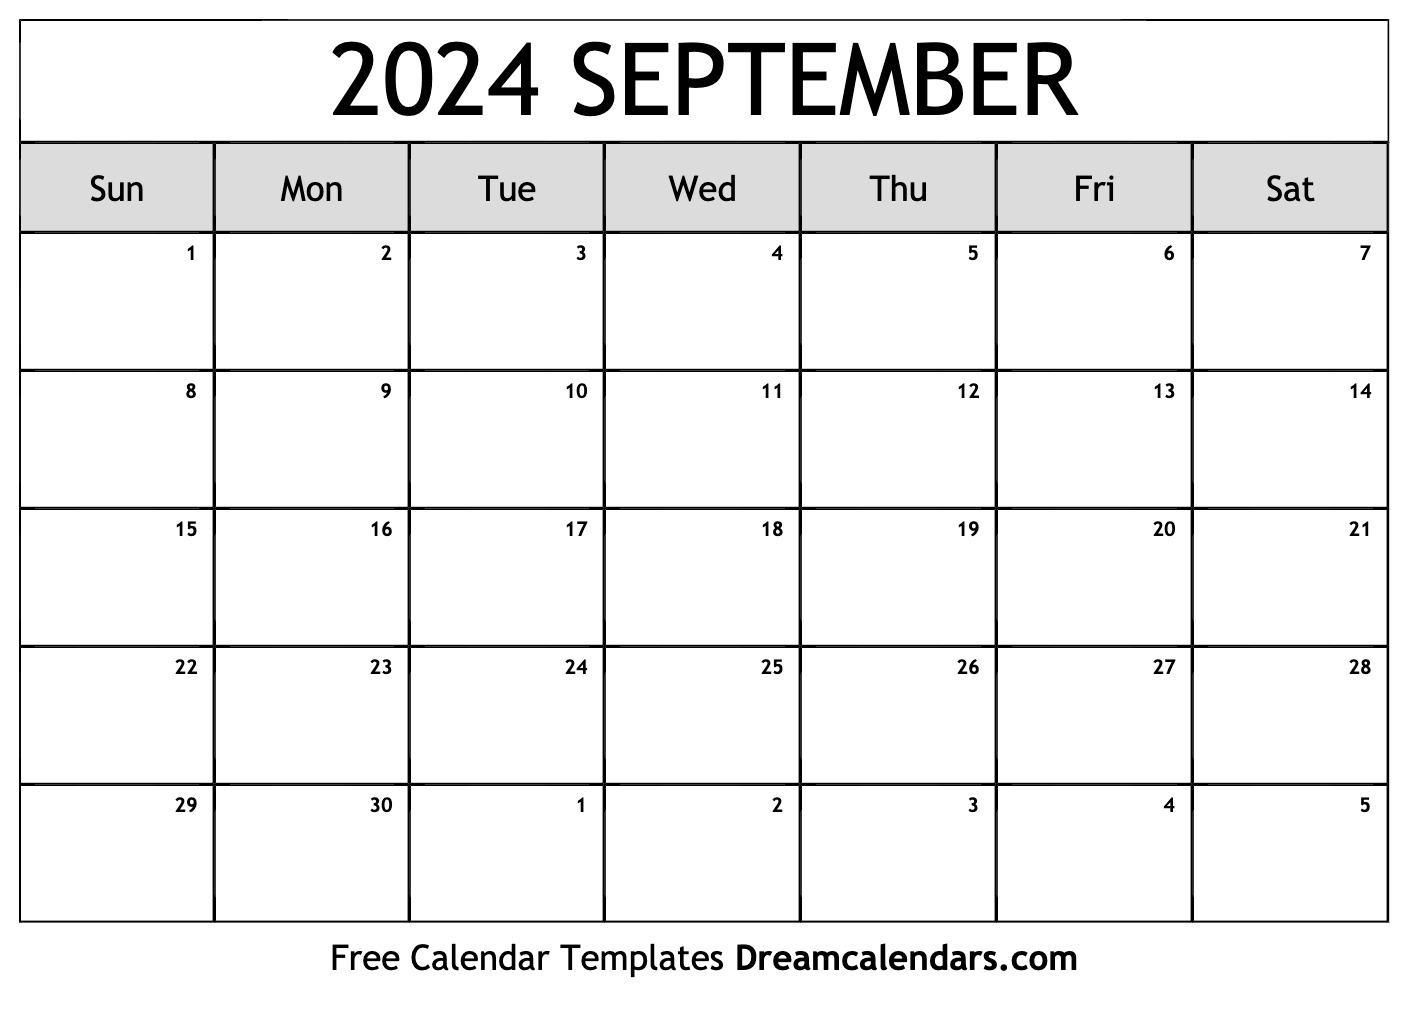 United States 2024 September Calendar Blank Printable Calendar Brynn - Free Printable Calendar 2024 July August September Free